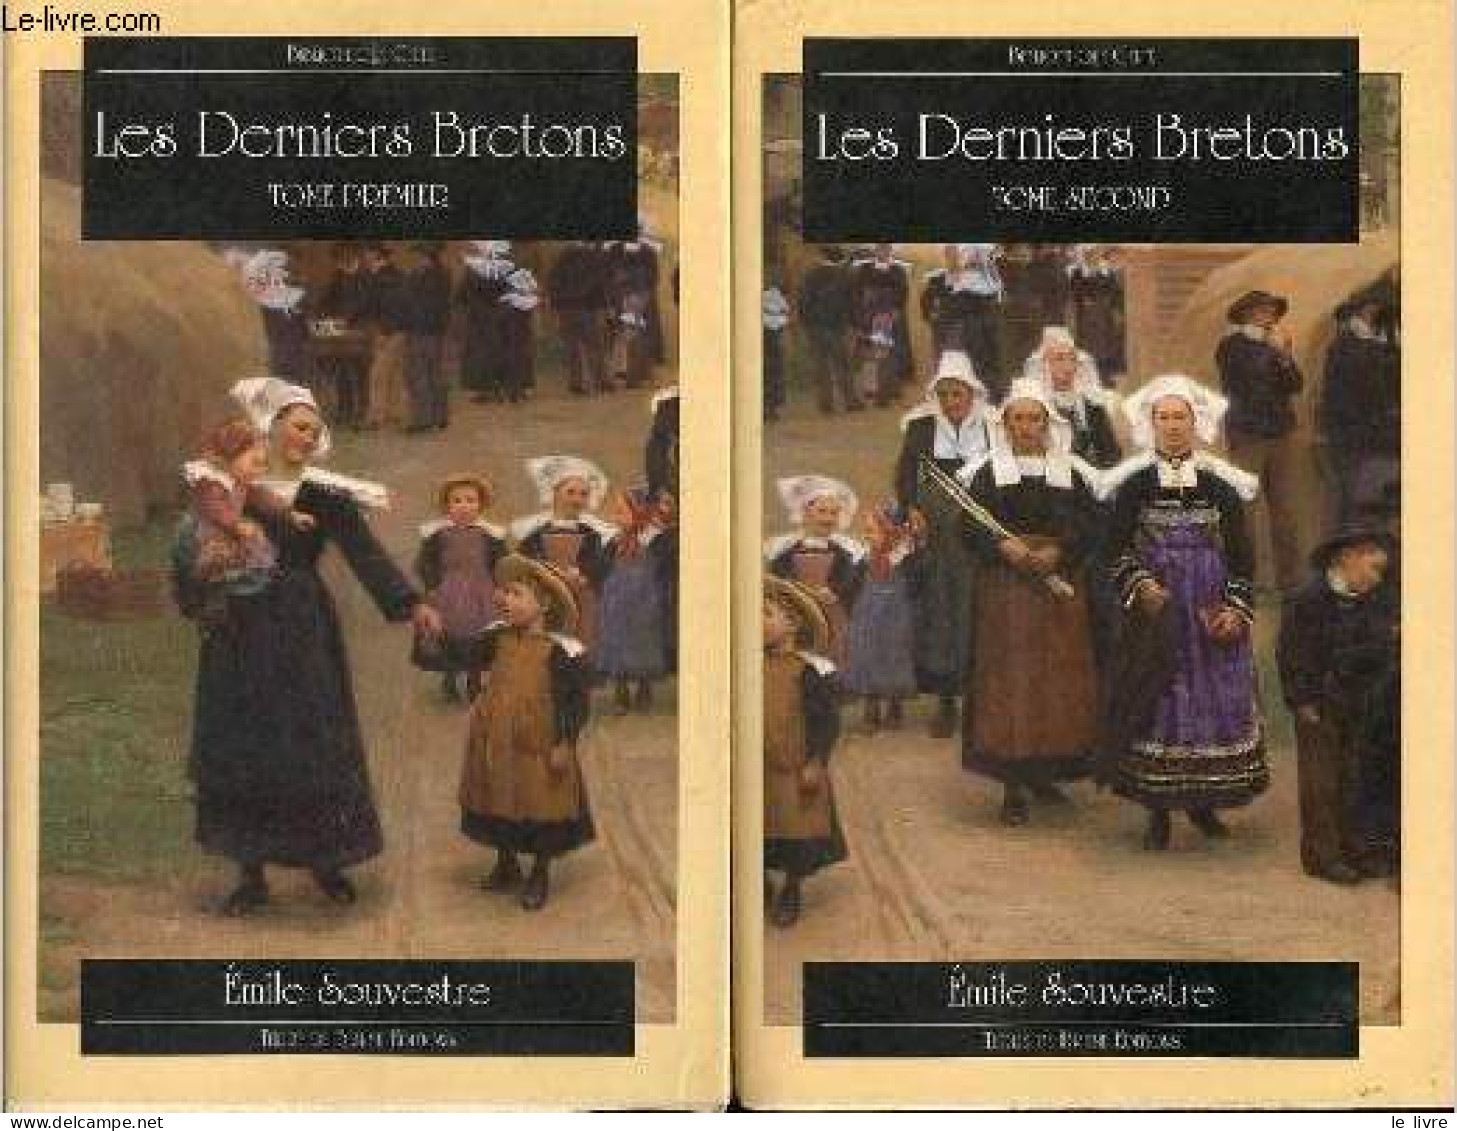 Les Derniers Bretons - Tome 1 + Tome 2 (2 Volumes) - Collection Bibliothèque Celte. - Souvestre Emile - 1997 - Bretagne